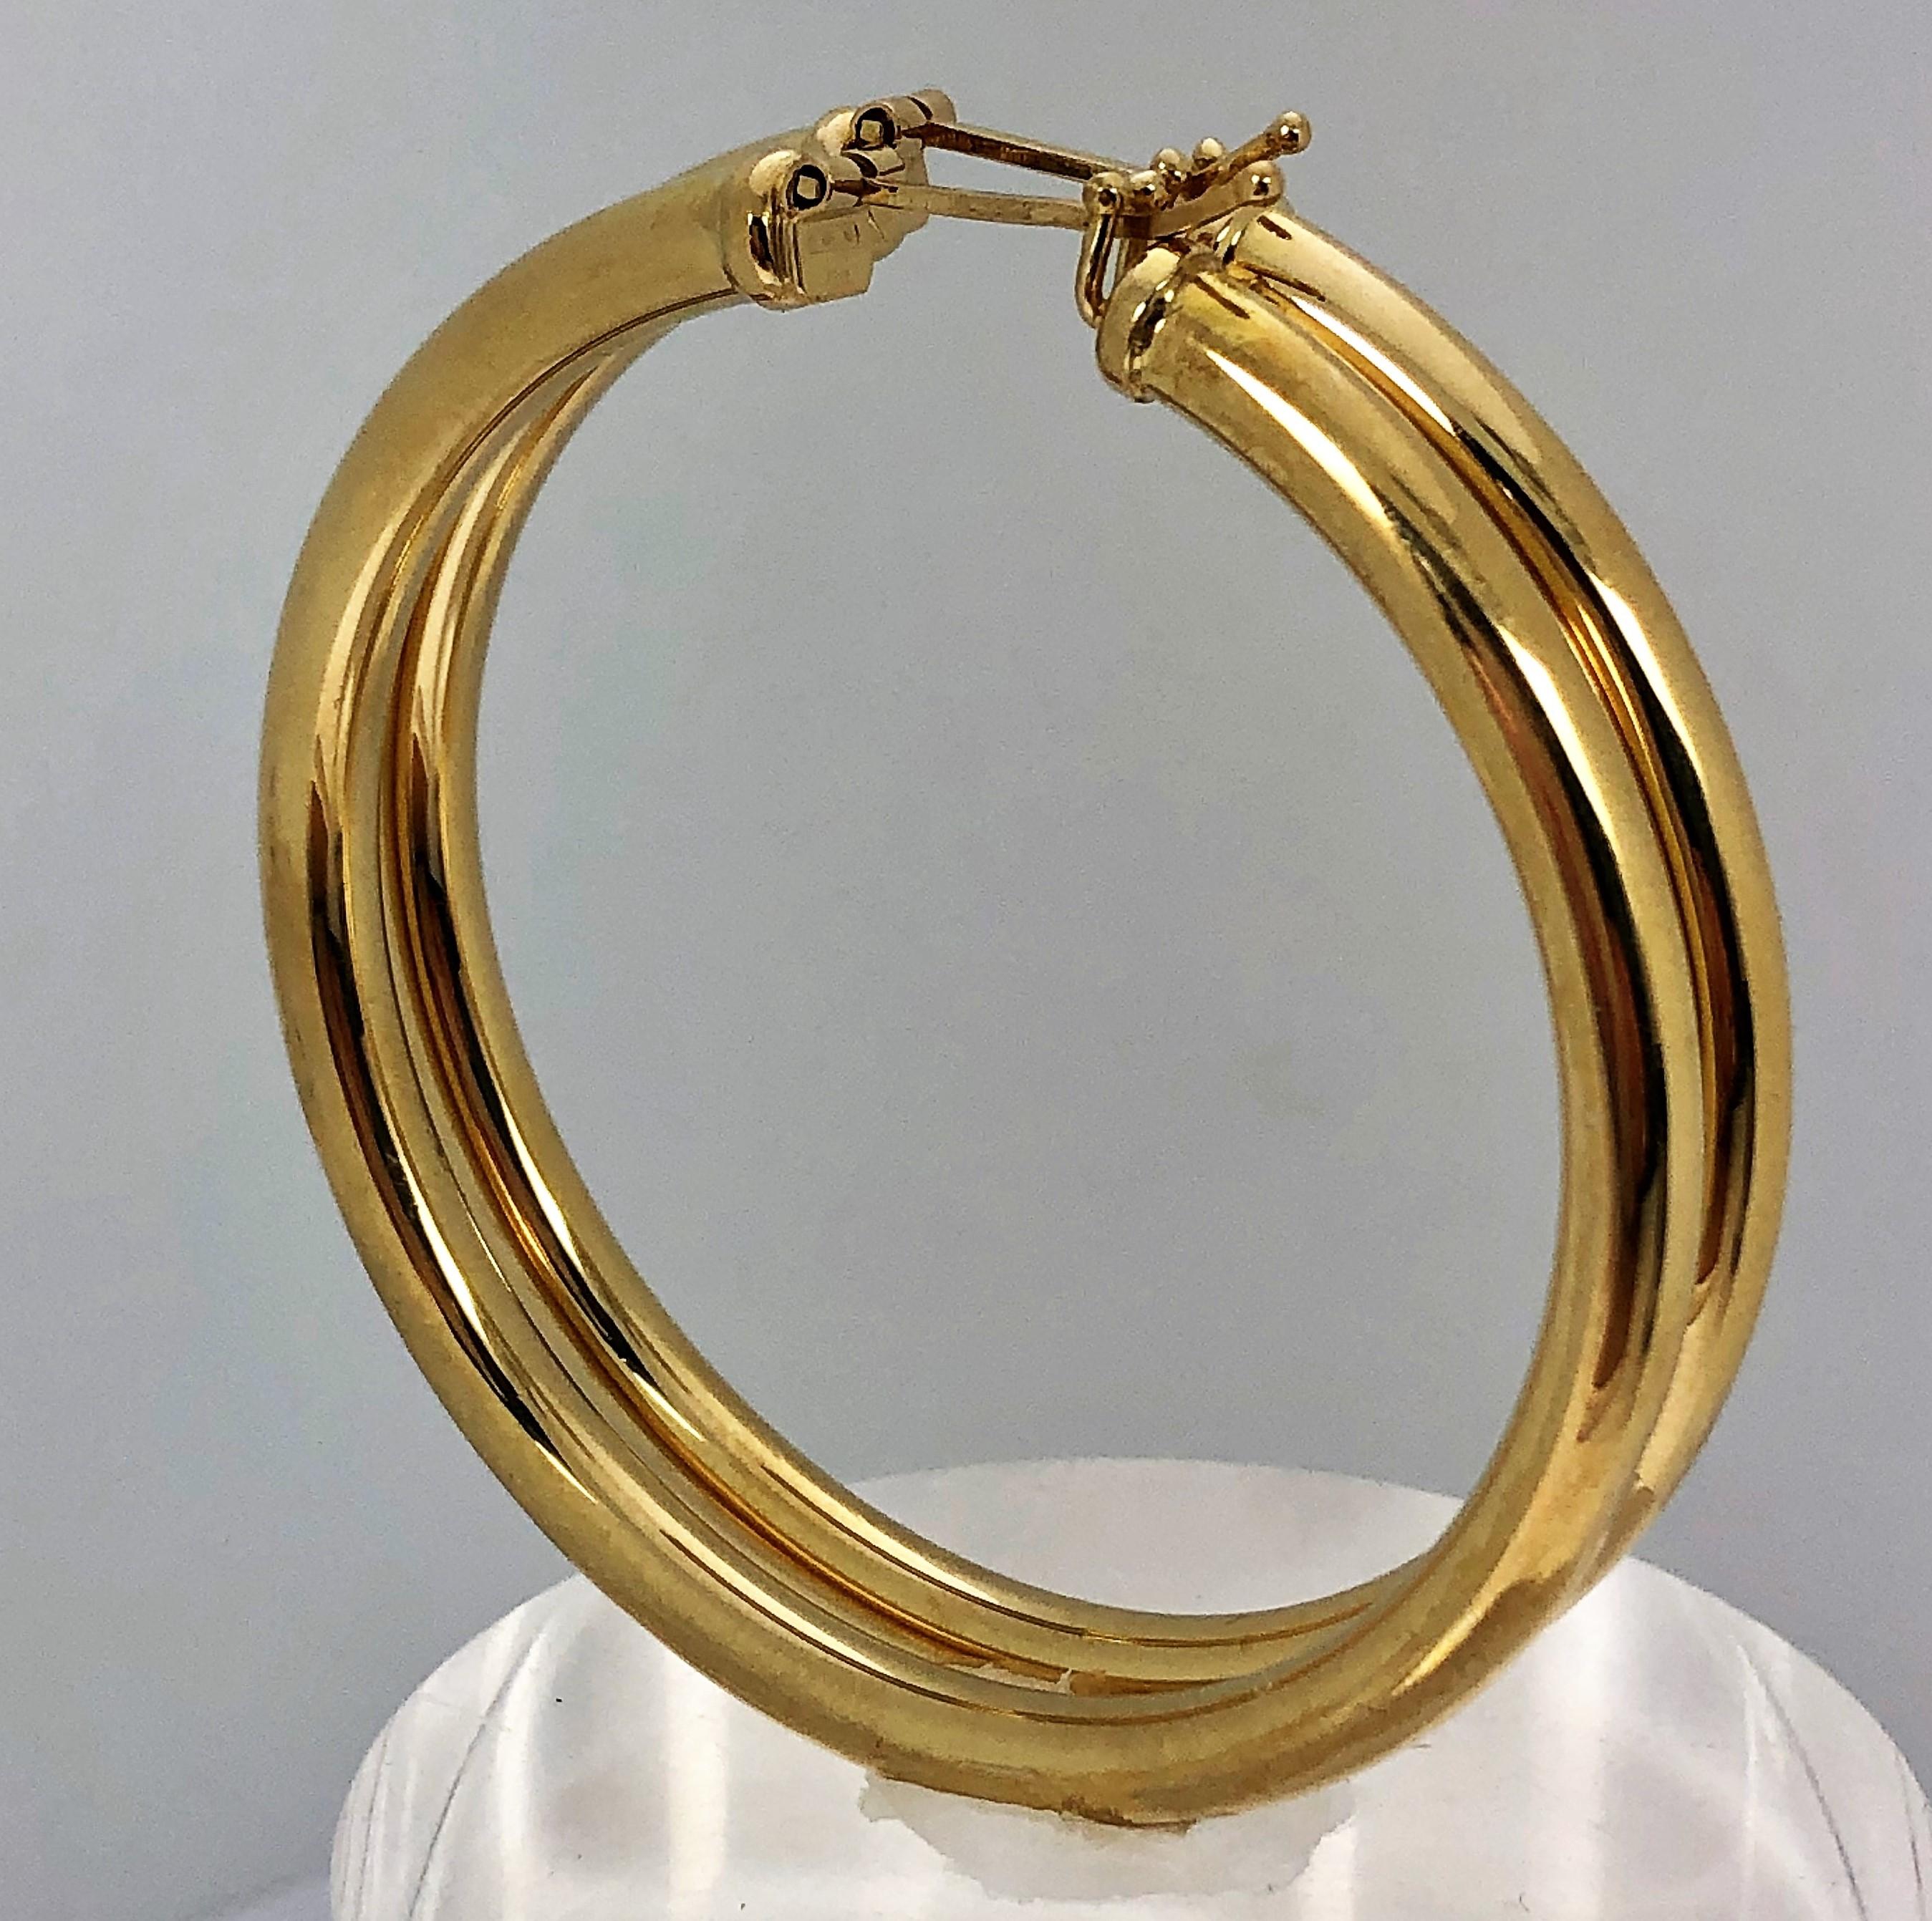 2 inch diameter hoop earrings